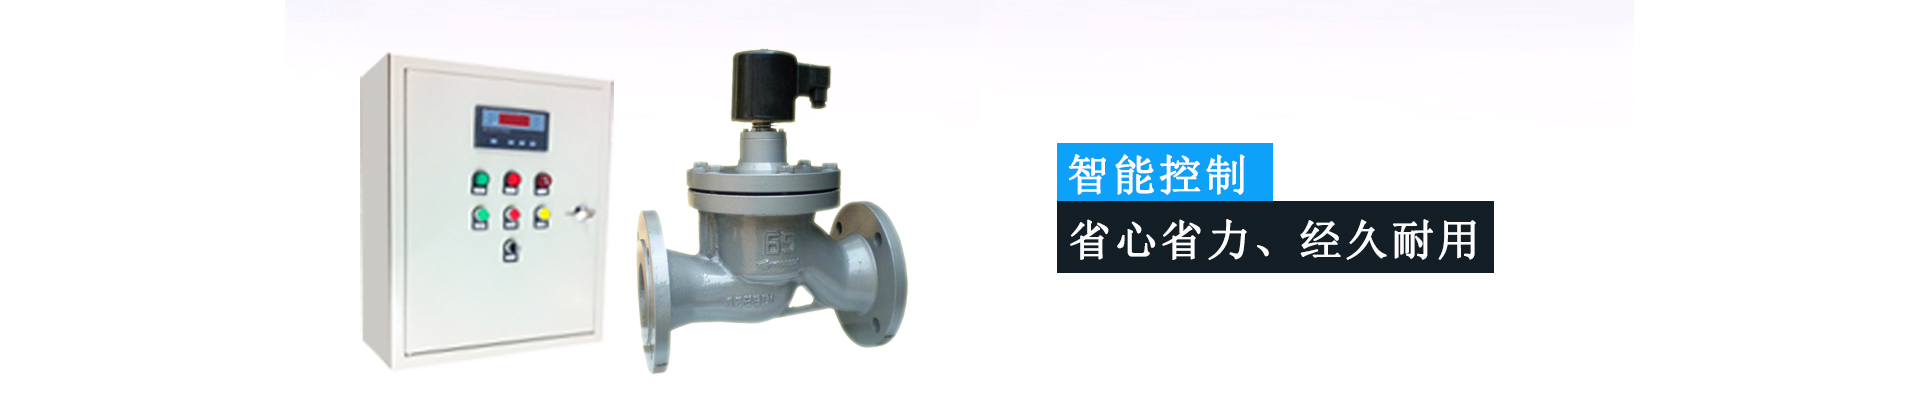 水温控制器|水温水位控制器|CLW水温控制仪专业工厂